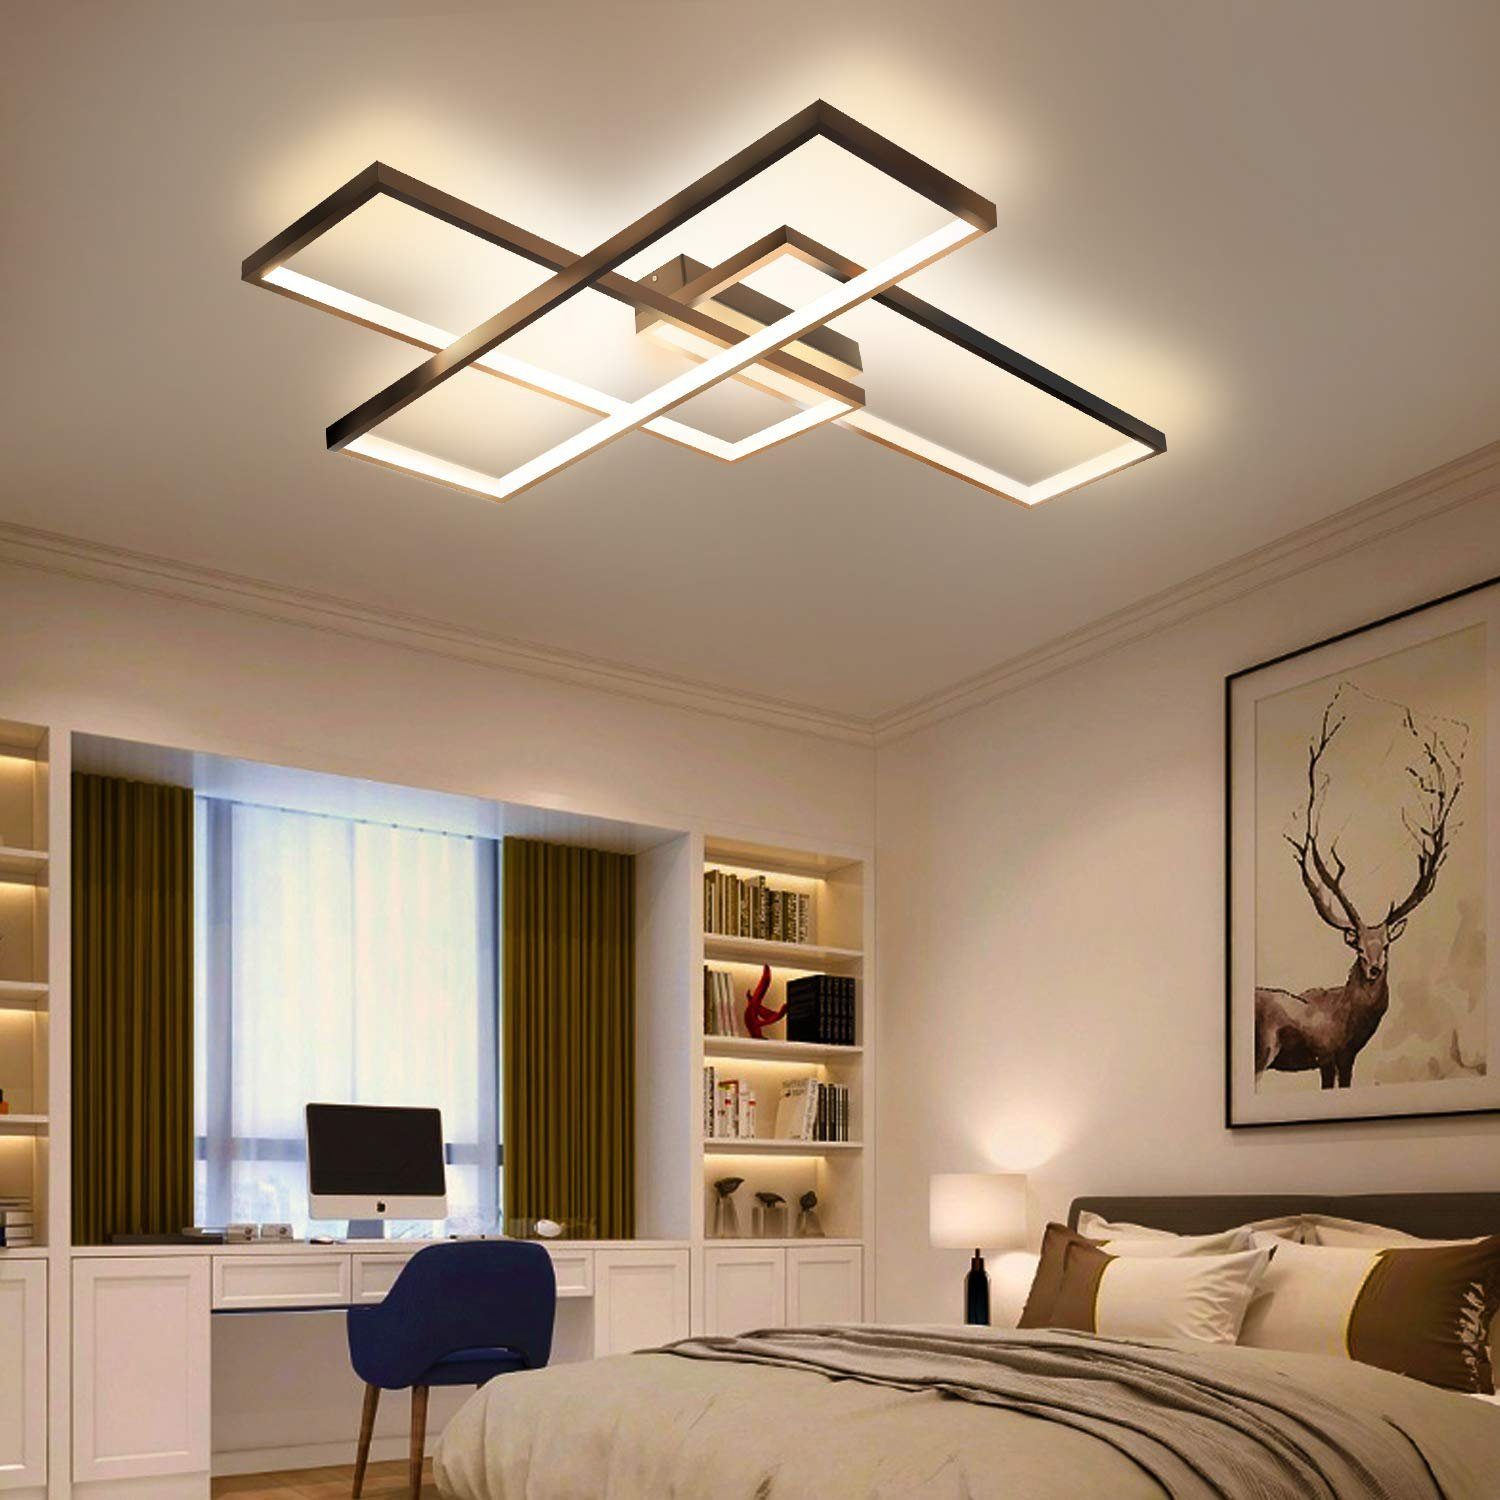 Flur Dielen Lampe Design LED Decken Leuchten Büro Wohn Schlaf Zimmer Beleuchtung 